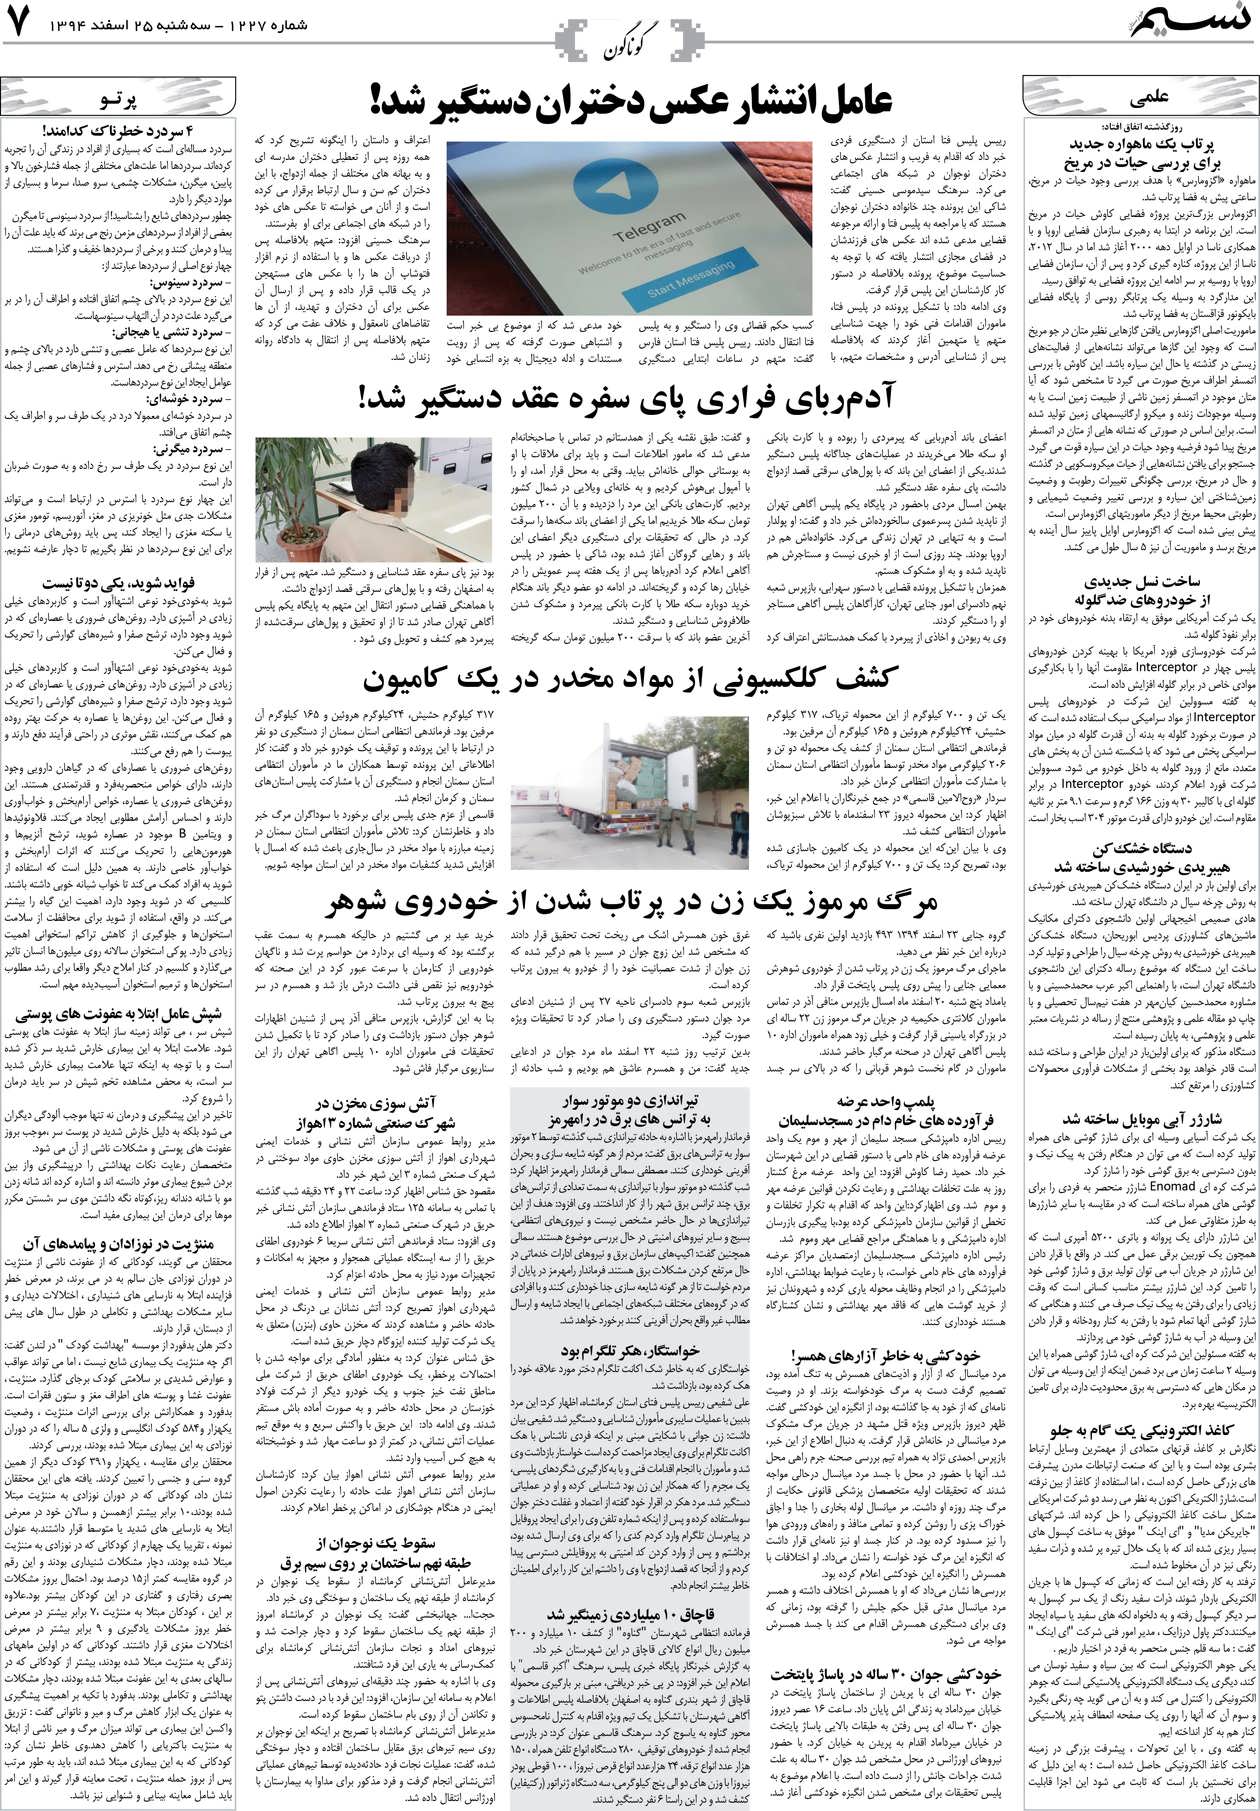 صفحه گوناگون روزنامه نسیم شماره 1227